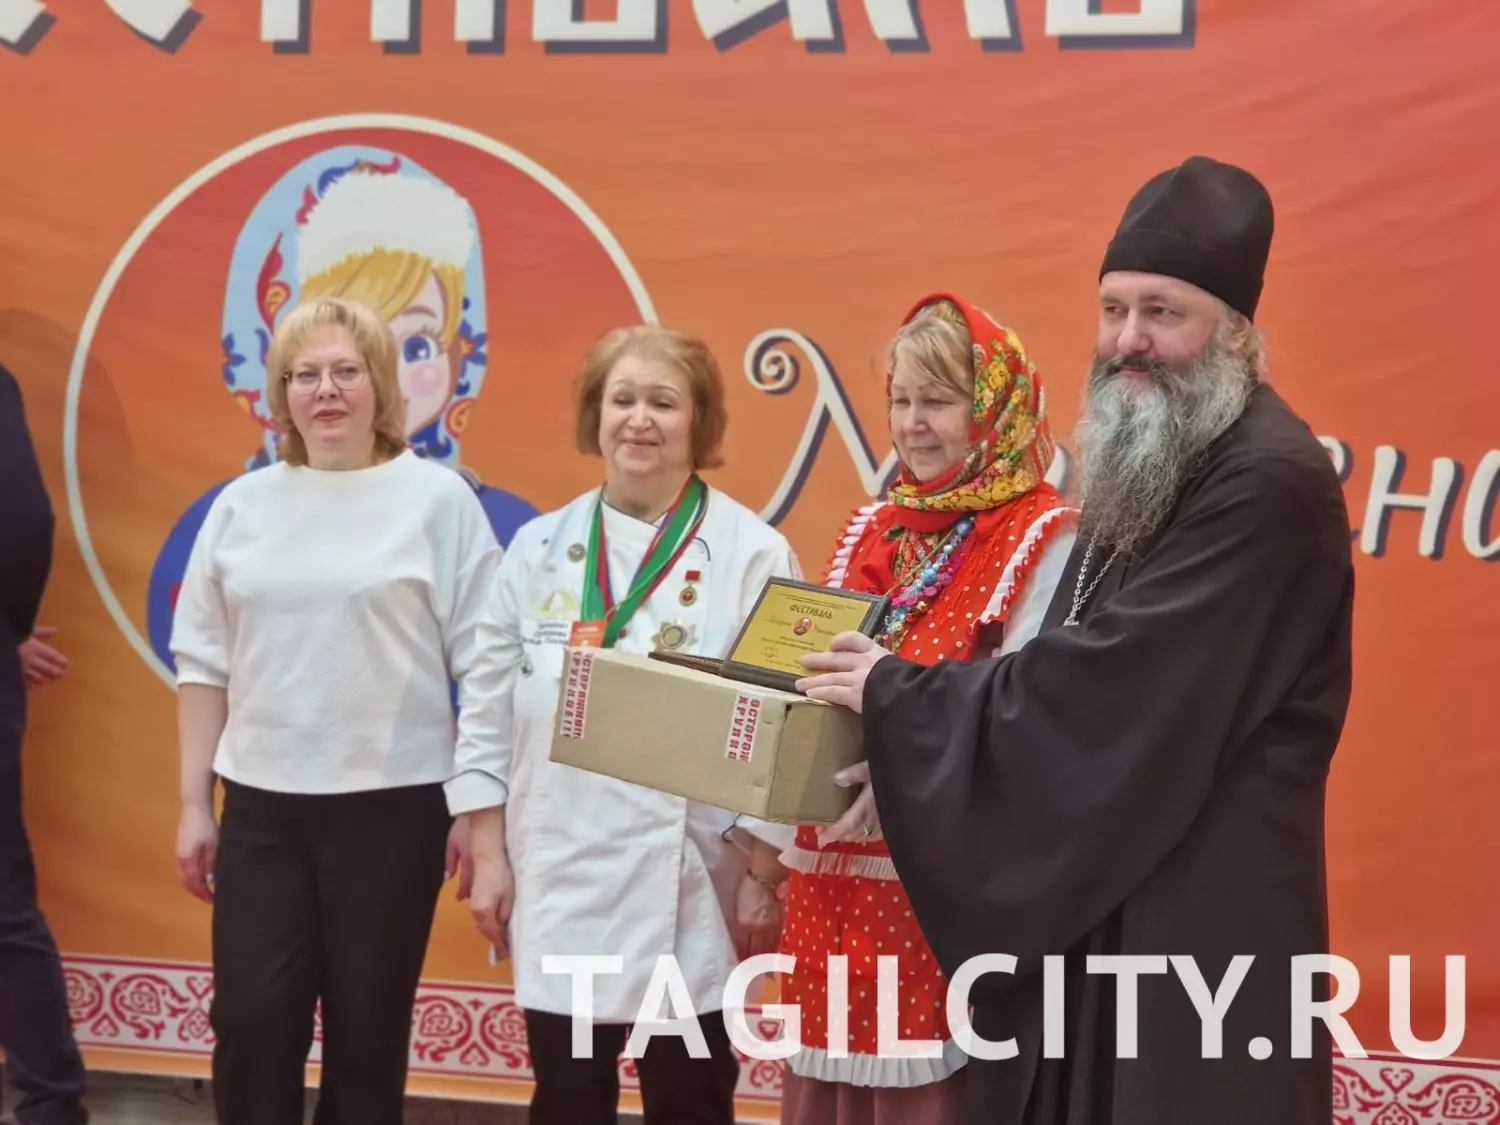 Победители фестиваля "Боярыня Масленица" в Нижнем Тагиле.